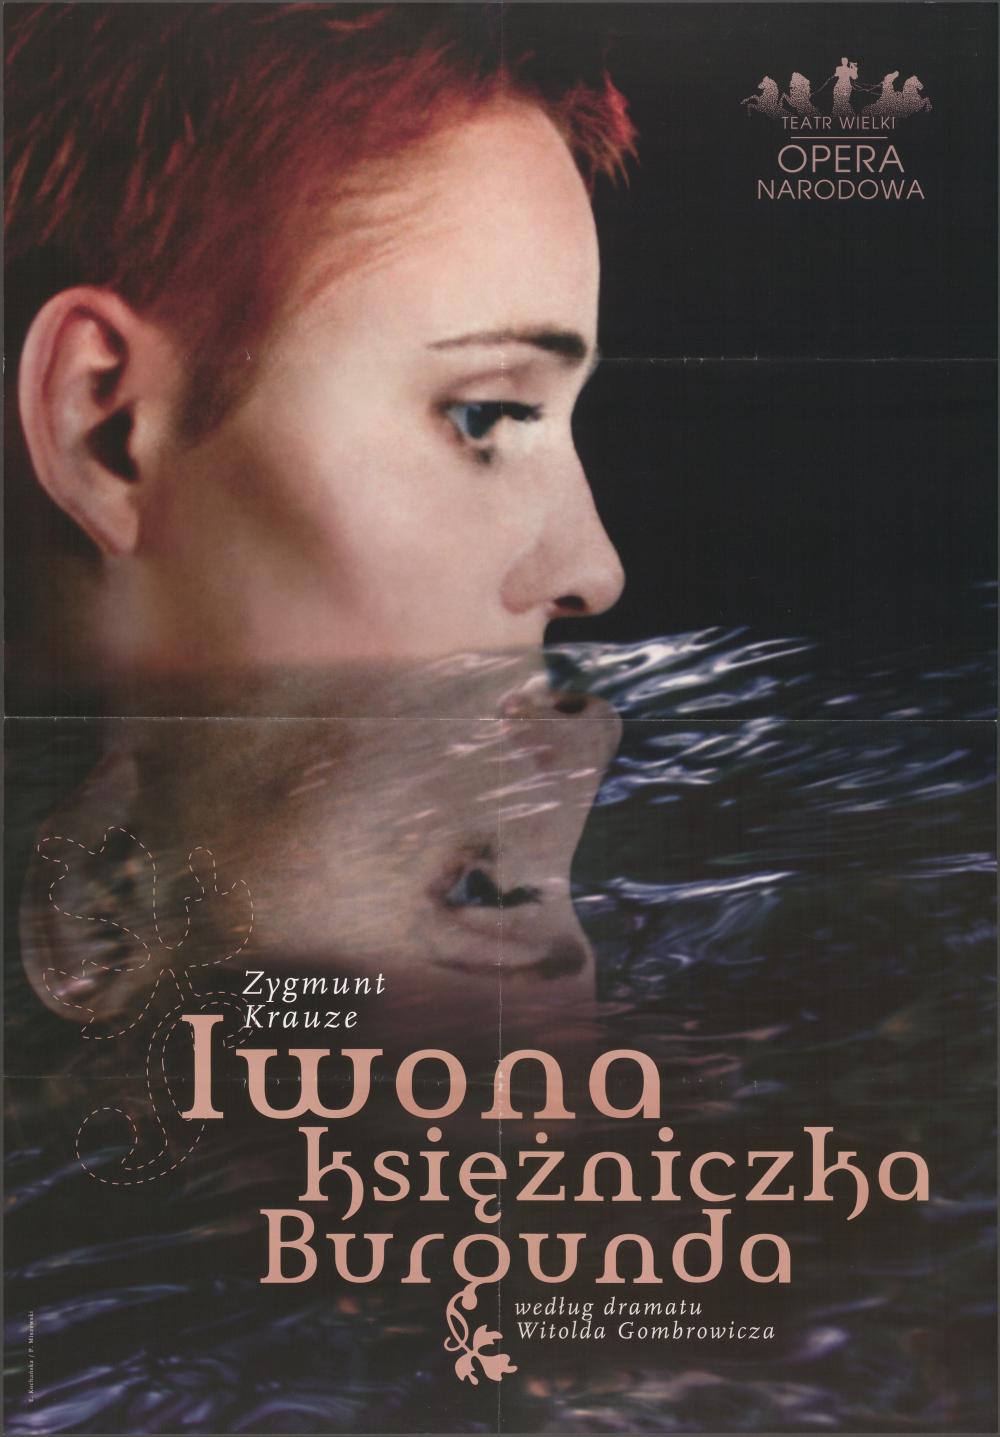 Plakat - „Iwona. Księżniczka Burgunda” Zygmunt Krauze 01-02-2007